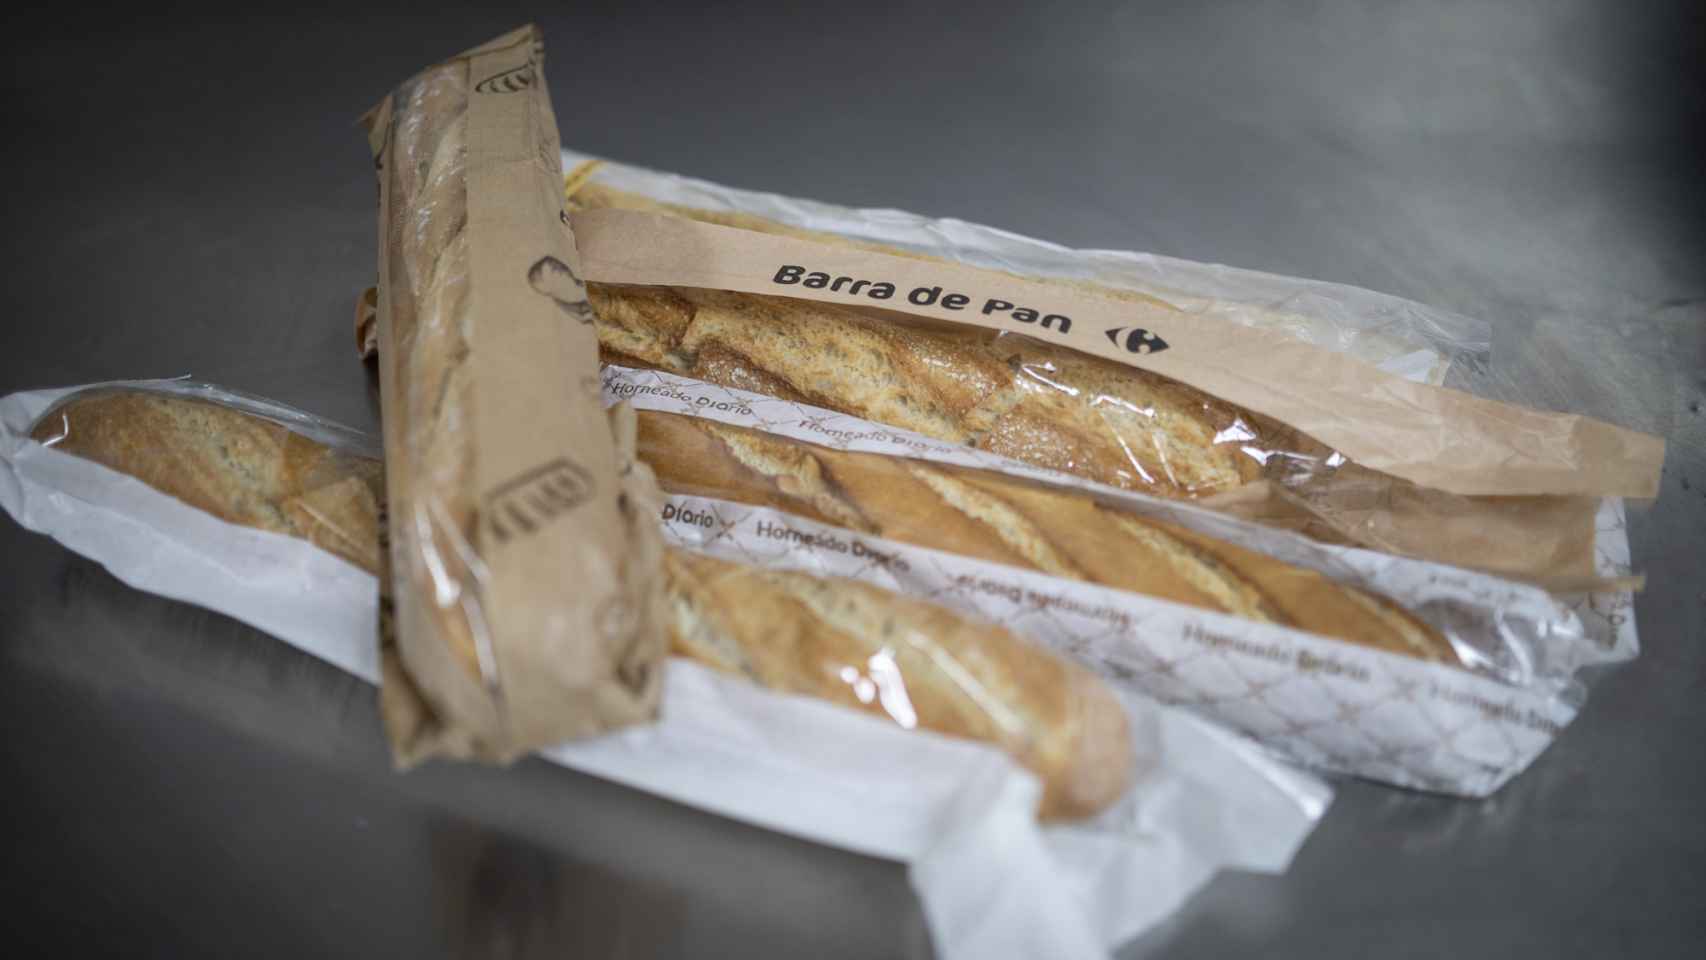 Las cinco barras de pan de los supermercados testadas en la cata.